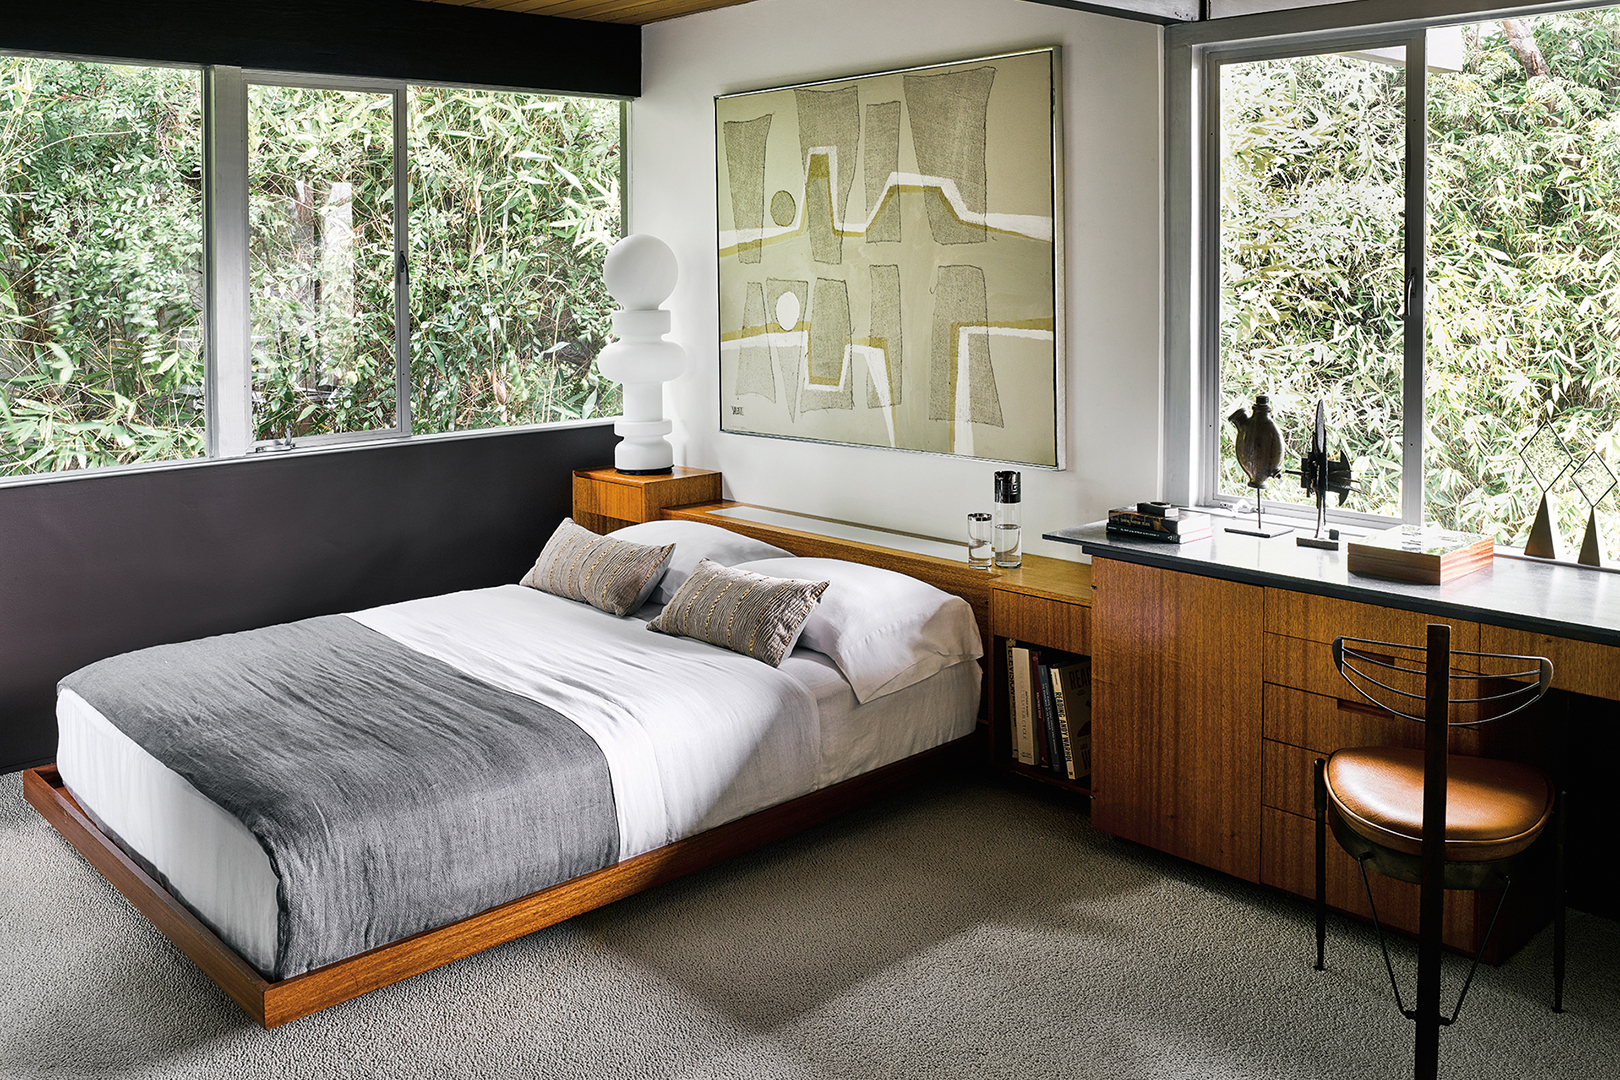 Bedroom with wooden bedframe